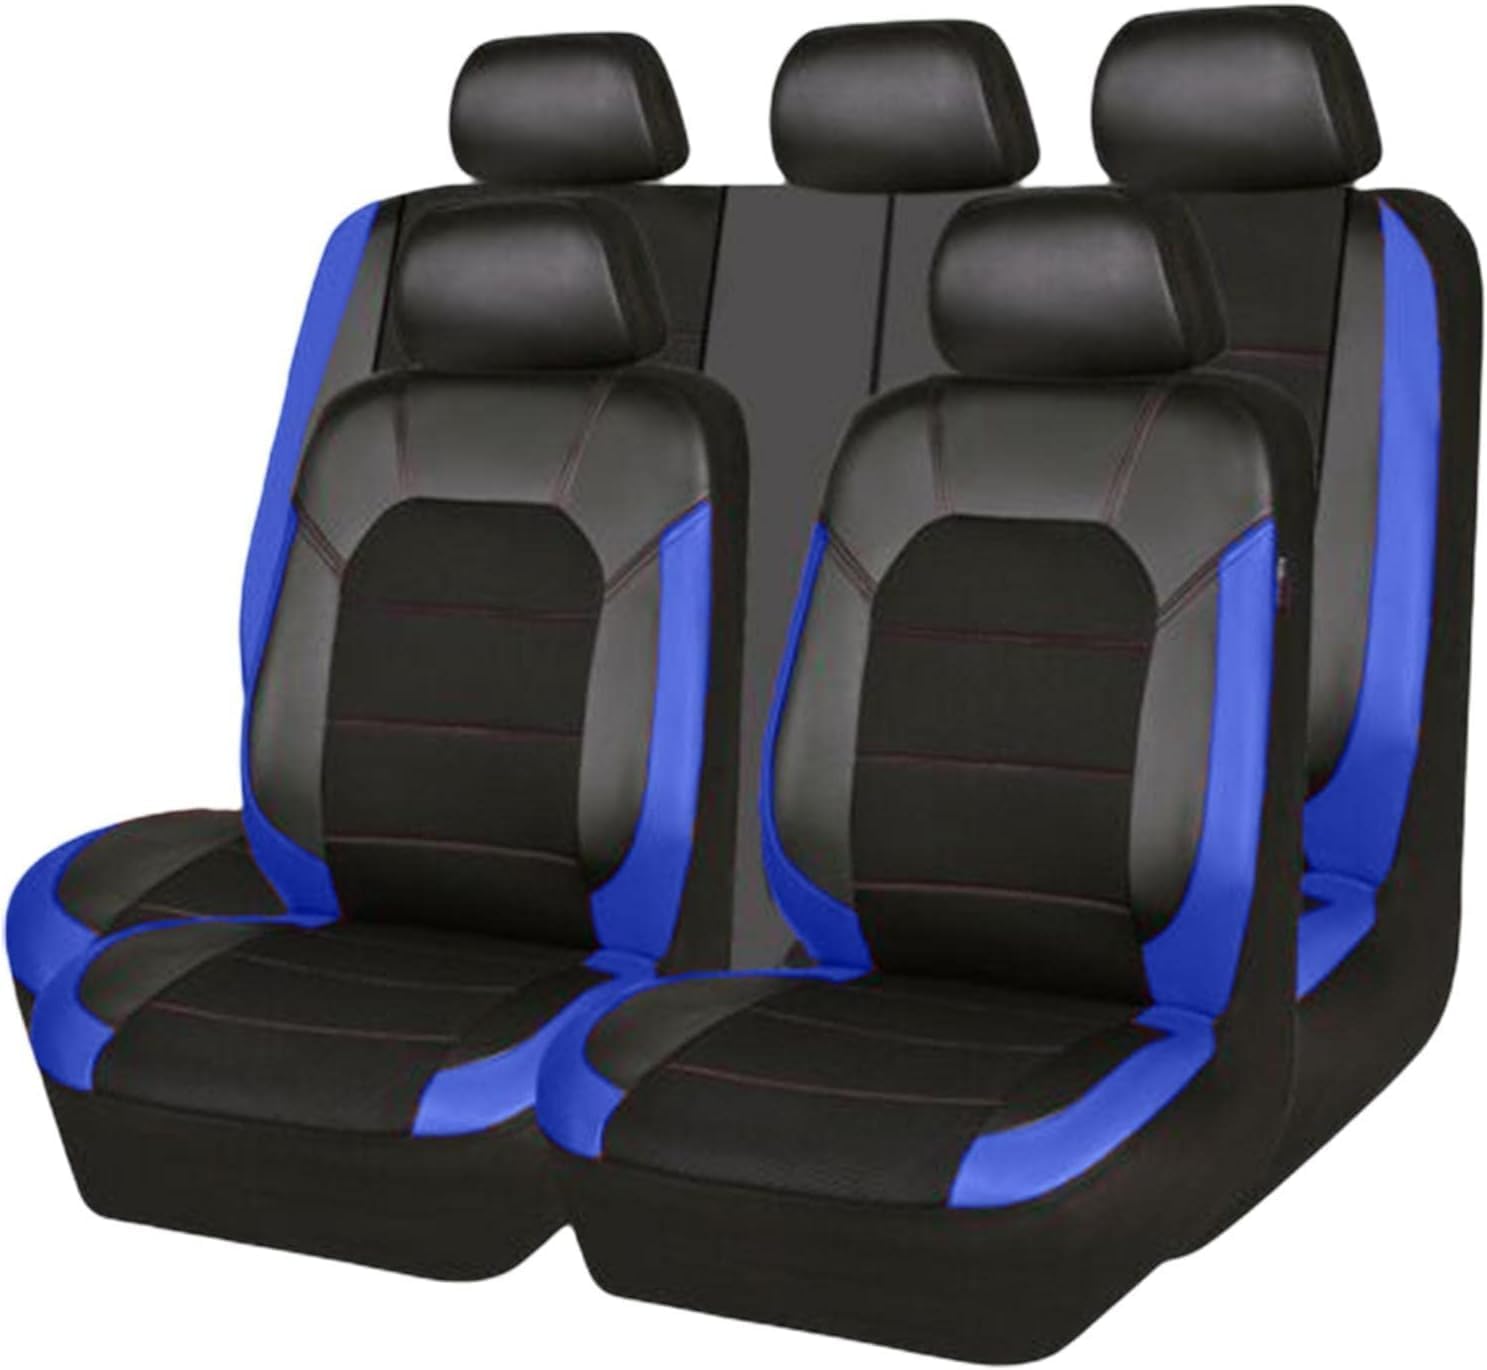 MoDma Auto Leder Sitzbezügesets Für-Subaru Forester 2013-2018, Allwetter Wasserdicht rutschfest Langlebig Autositz Schonbezug,Blue von MoDma